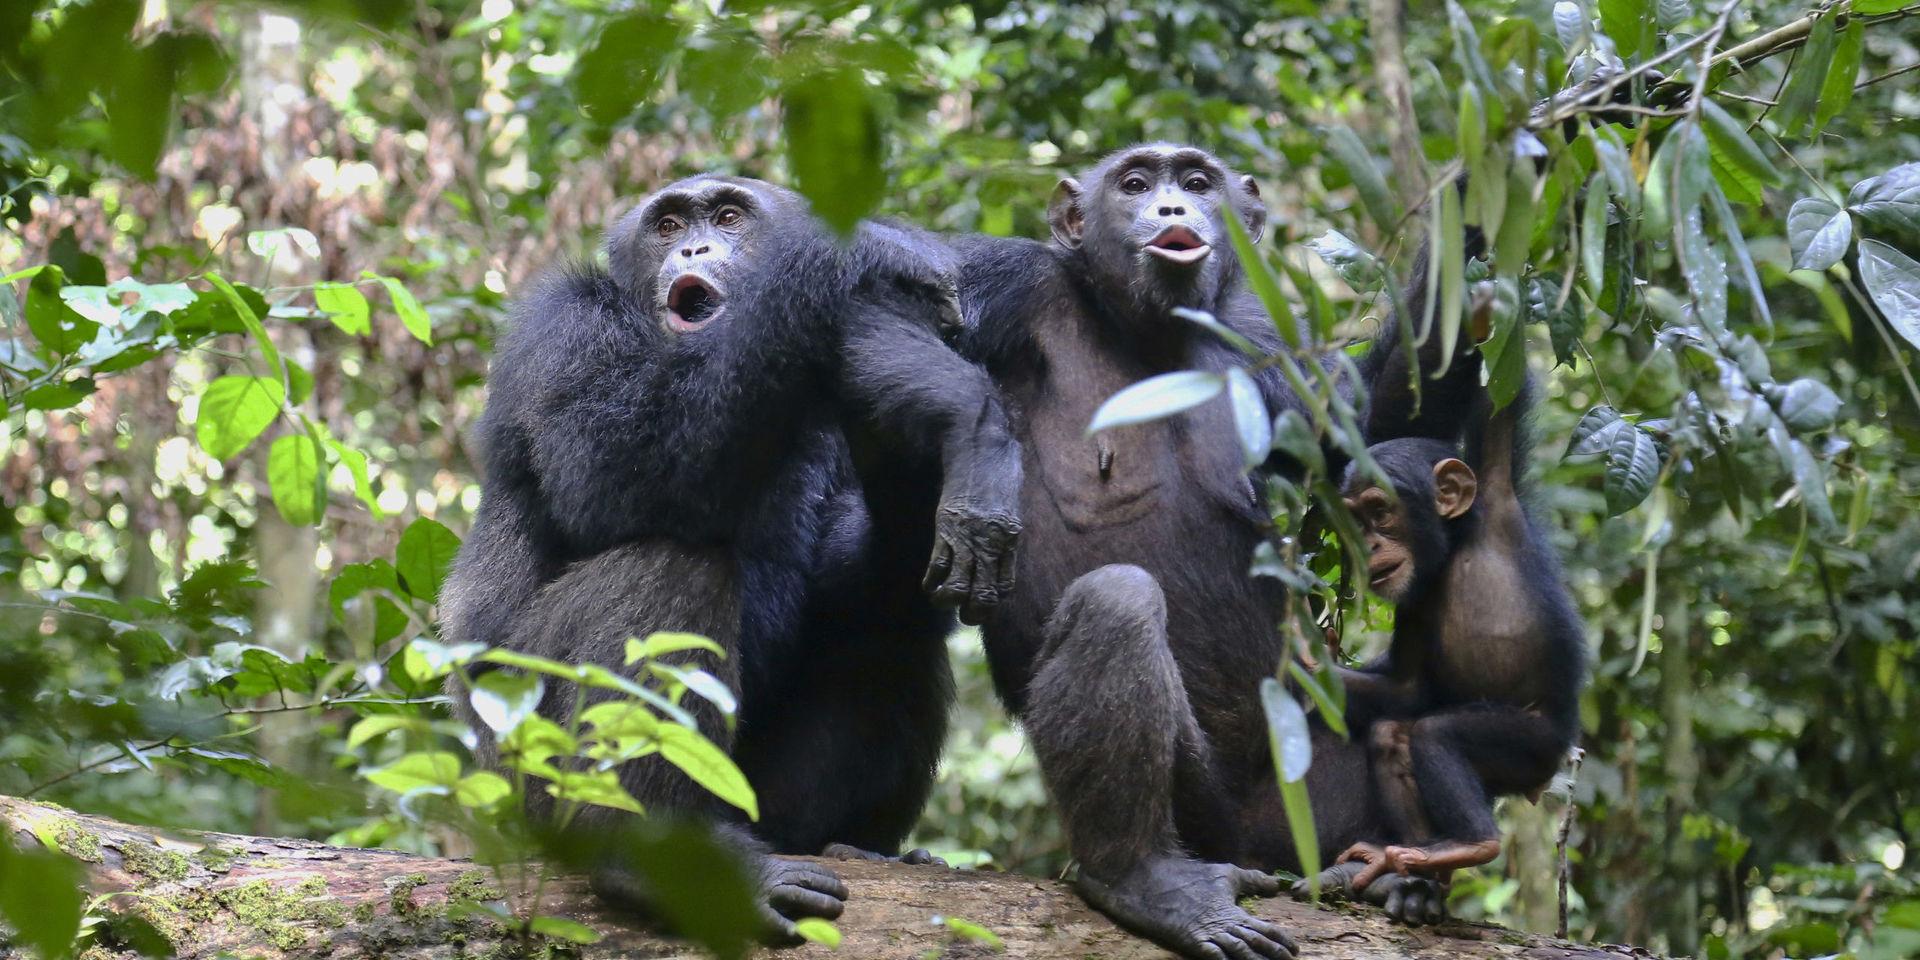 Chimpanser kan röra sig rytmiskt till musik. Chimpanserna på bilden har inget med den aktuella studien att göra. Arkivbild.